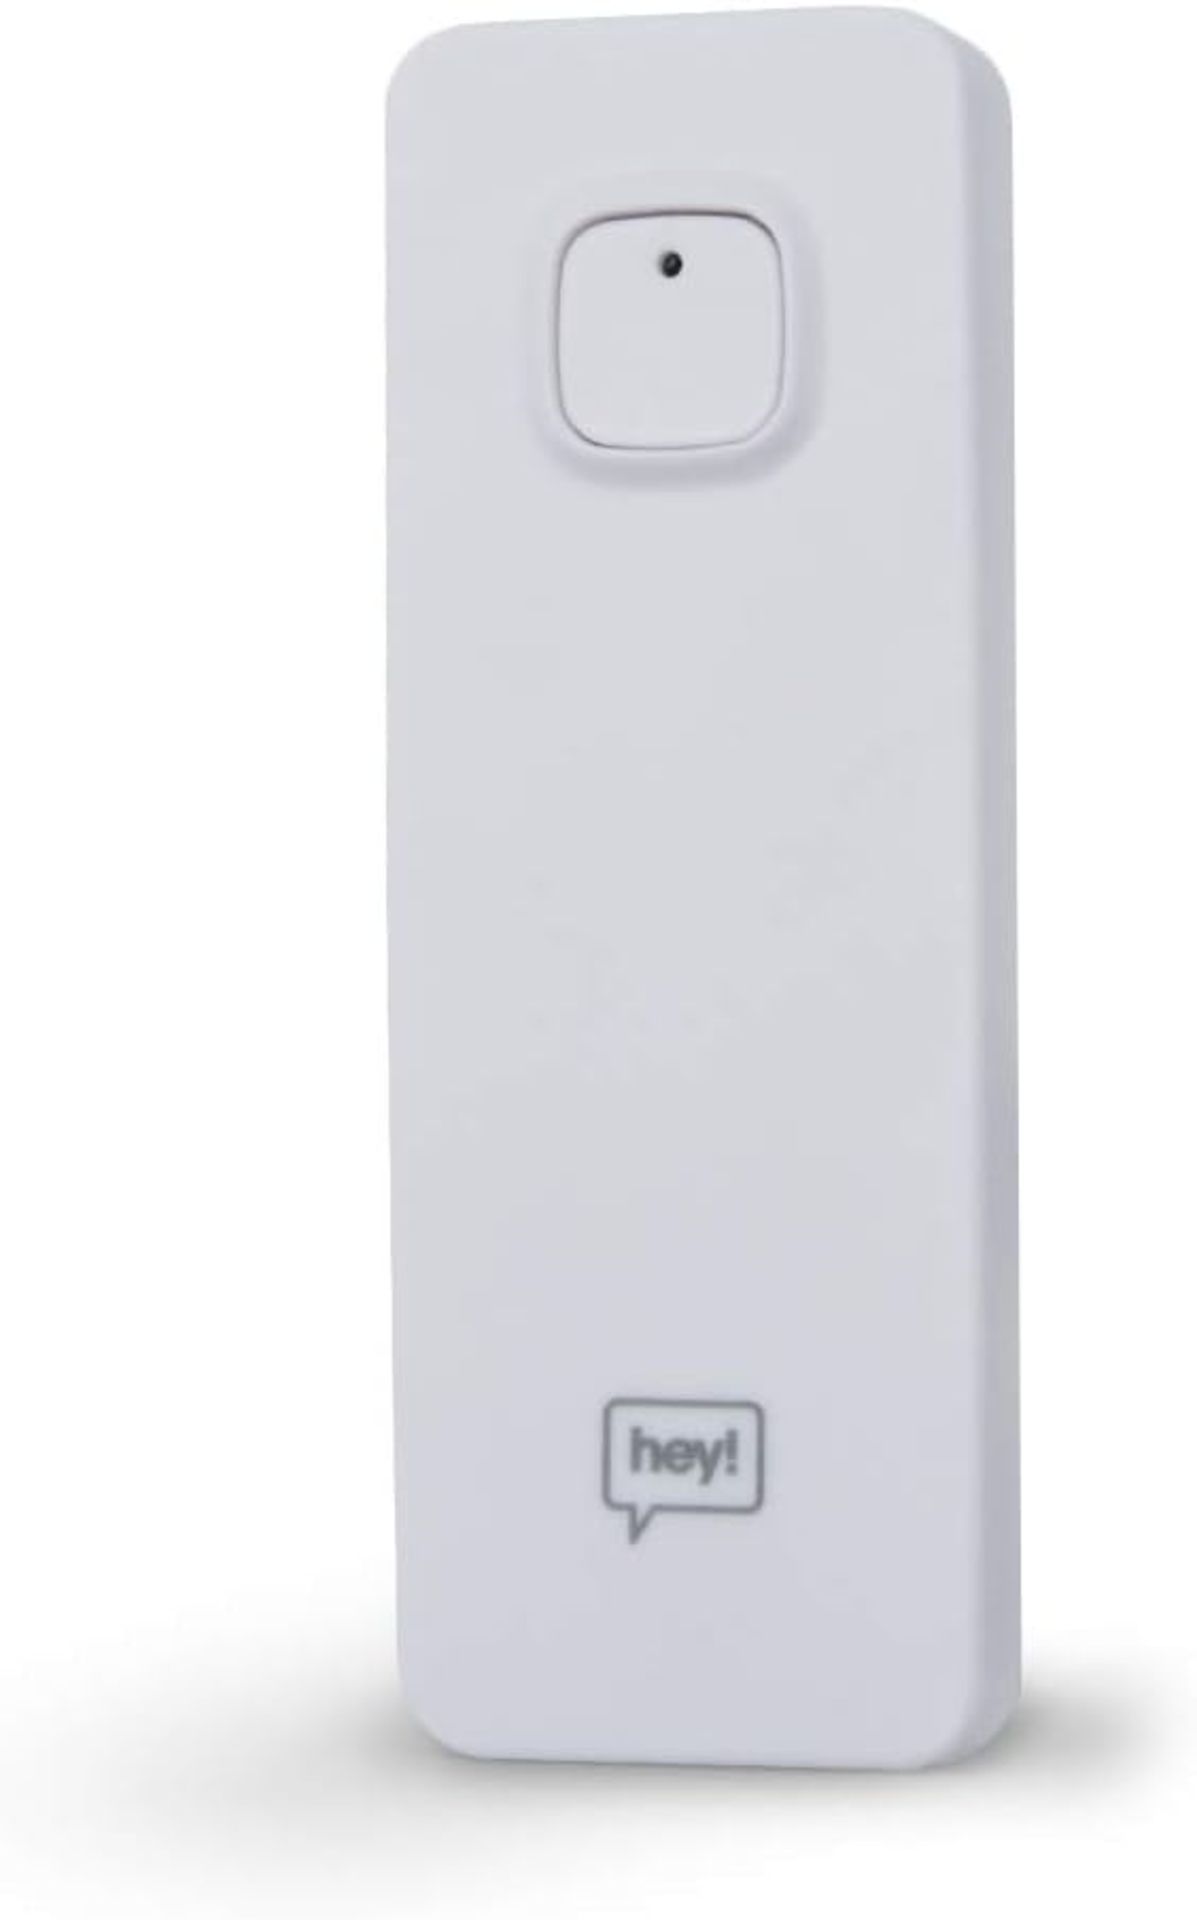 12x NEW & BOXED HEY! SMART Leak Sensor. RRP £19.99 EACH. Indoor Leak Sensor for avoiding - Image 2 of 2